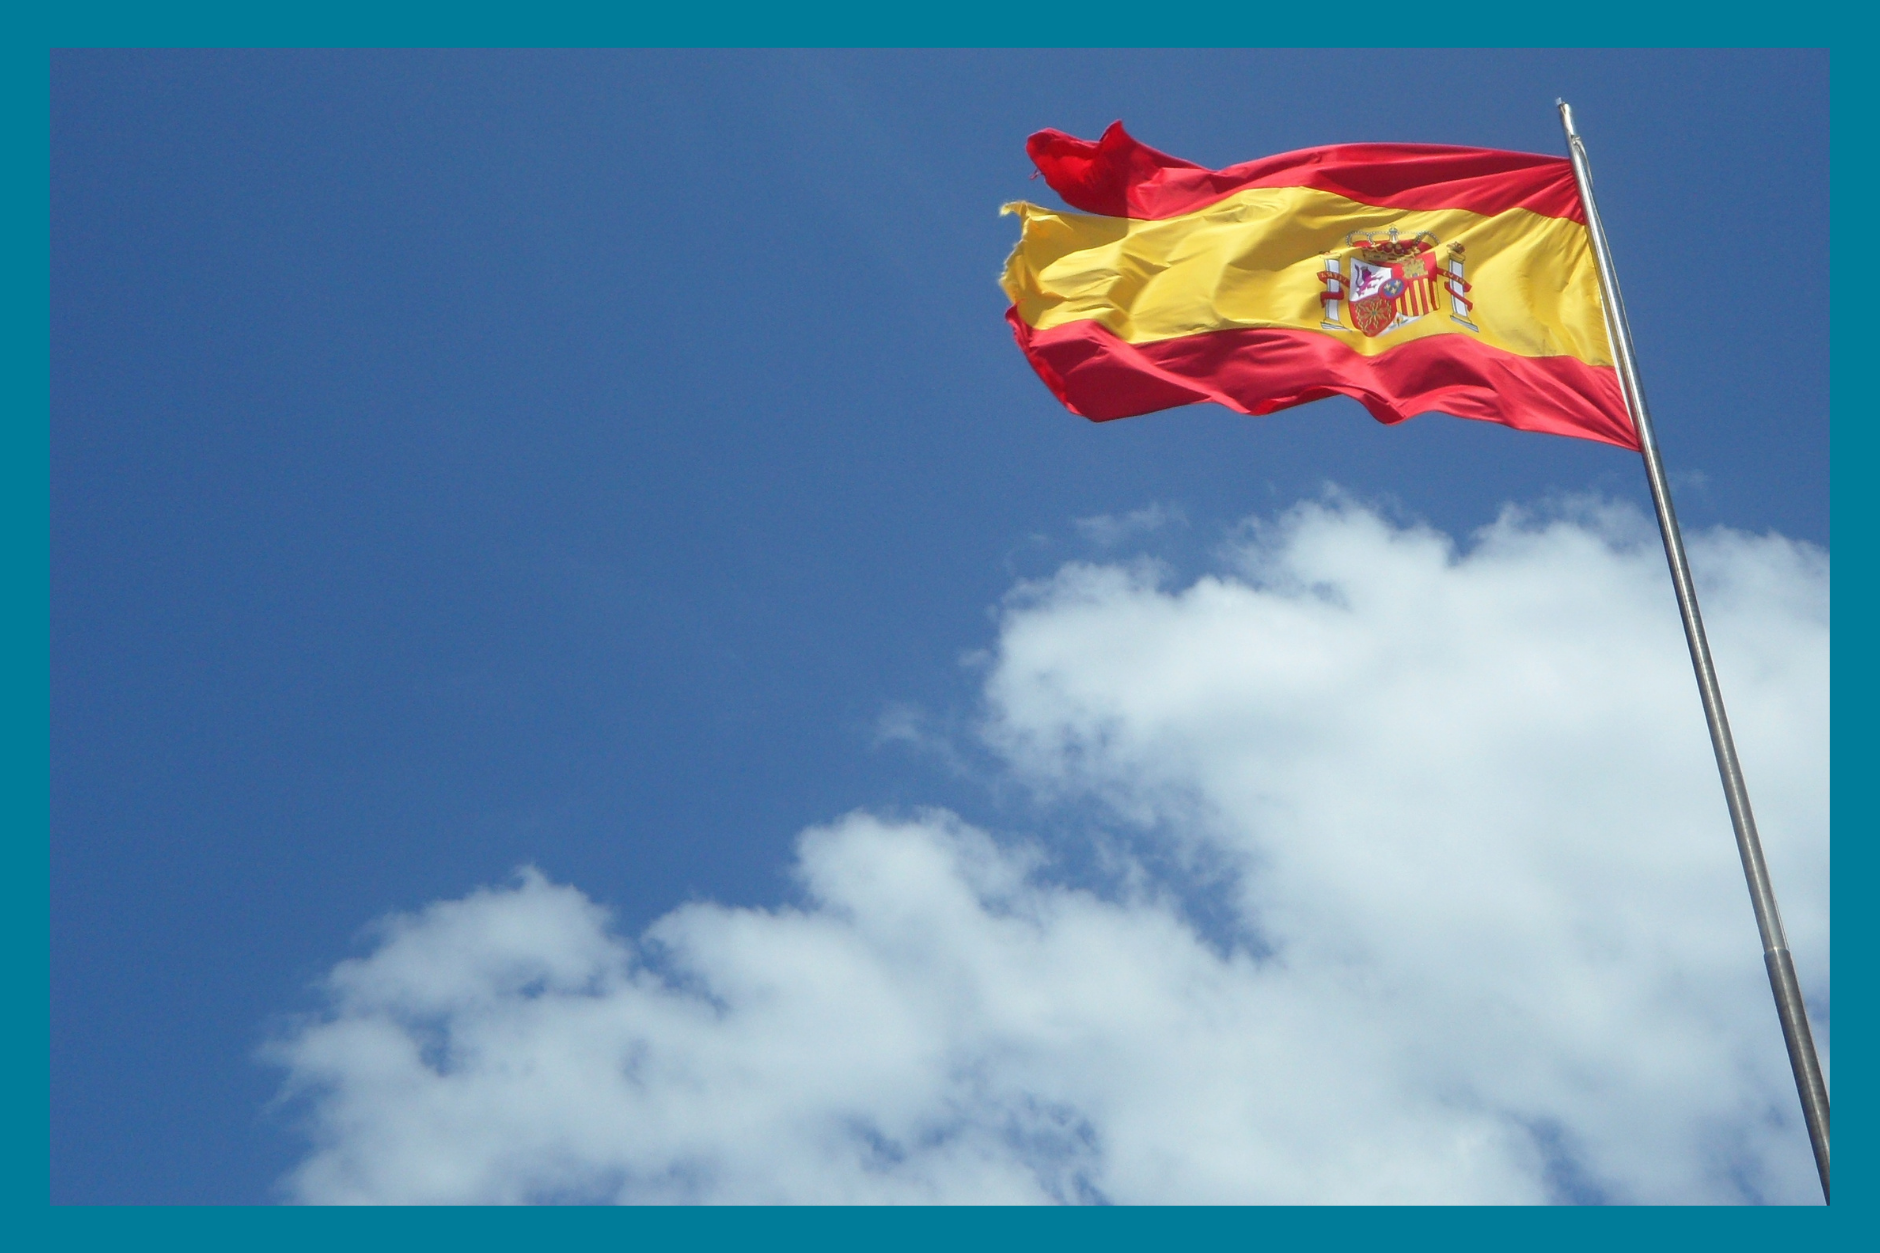 Espanjan lippu ja taivas